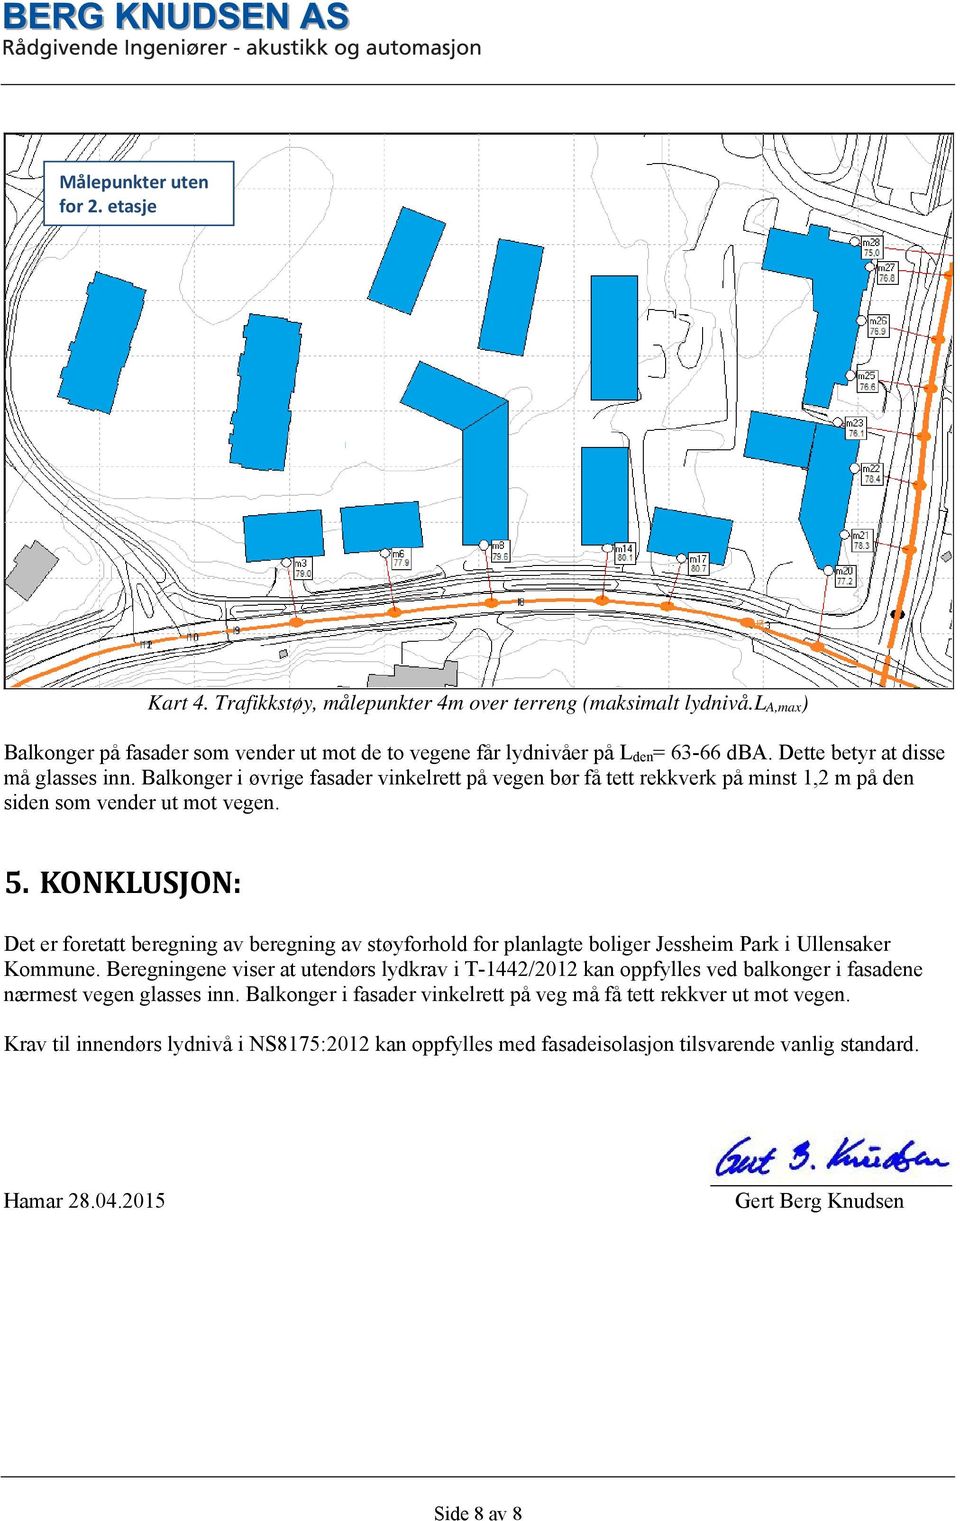 KONKLUSJON: Det er foretatt beregning av beregning av støyforhold for planlagte boliger Jessheim Park i Ullensaker Kommune.